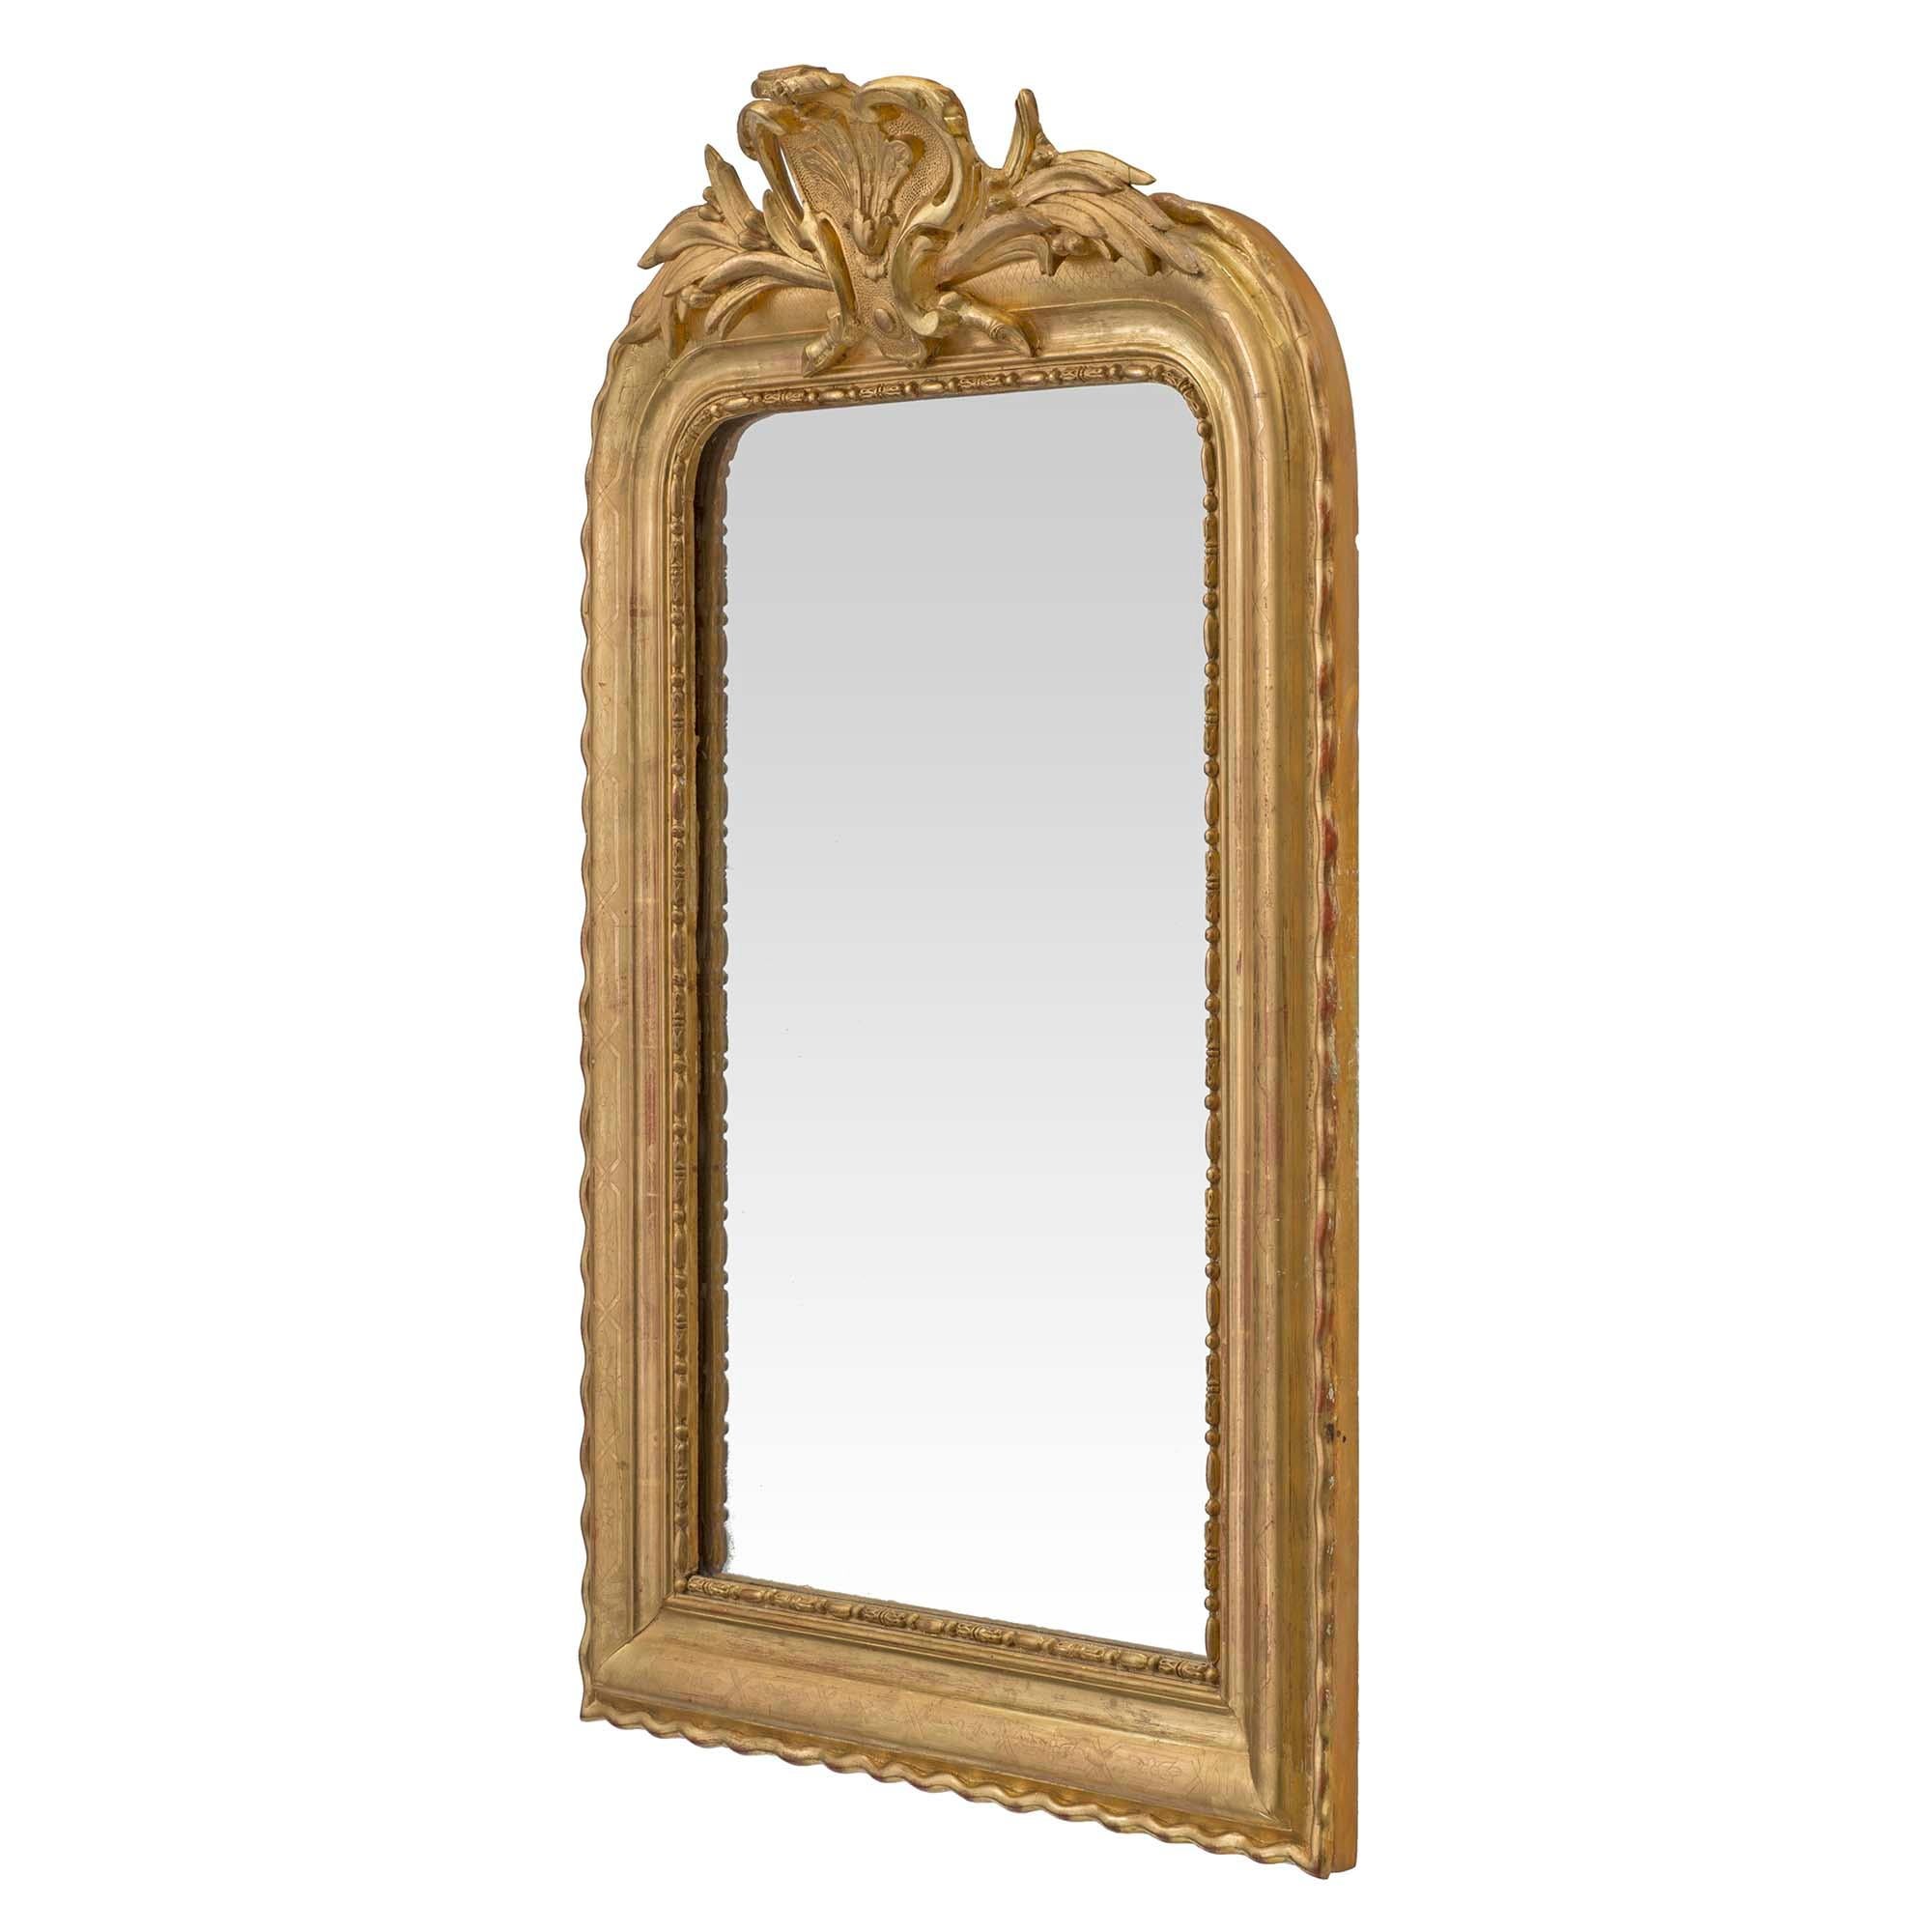 Eine schöne Französisch 19. Jahrhundert Louis XVI St. Vergoldung Spiegel. Die originale Spiegelplatte wird von einer eiförmigen Zierleiste mit verschnörkelten Rändern umrahmt, die sich innerhalb des geformten Spiegels befindet. Auf dem attraktiven